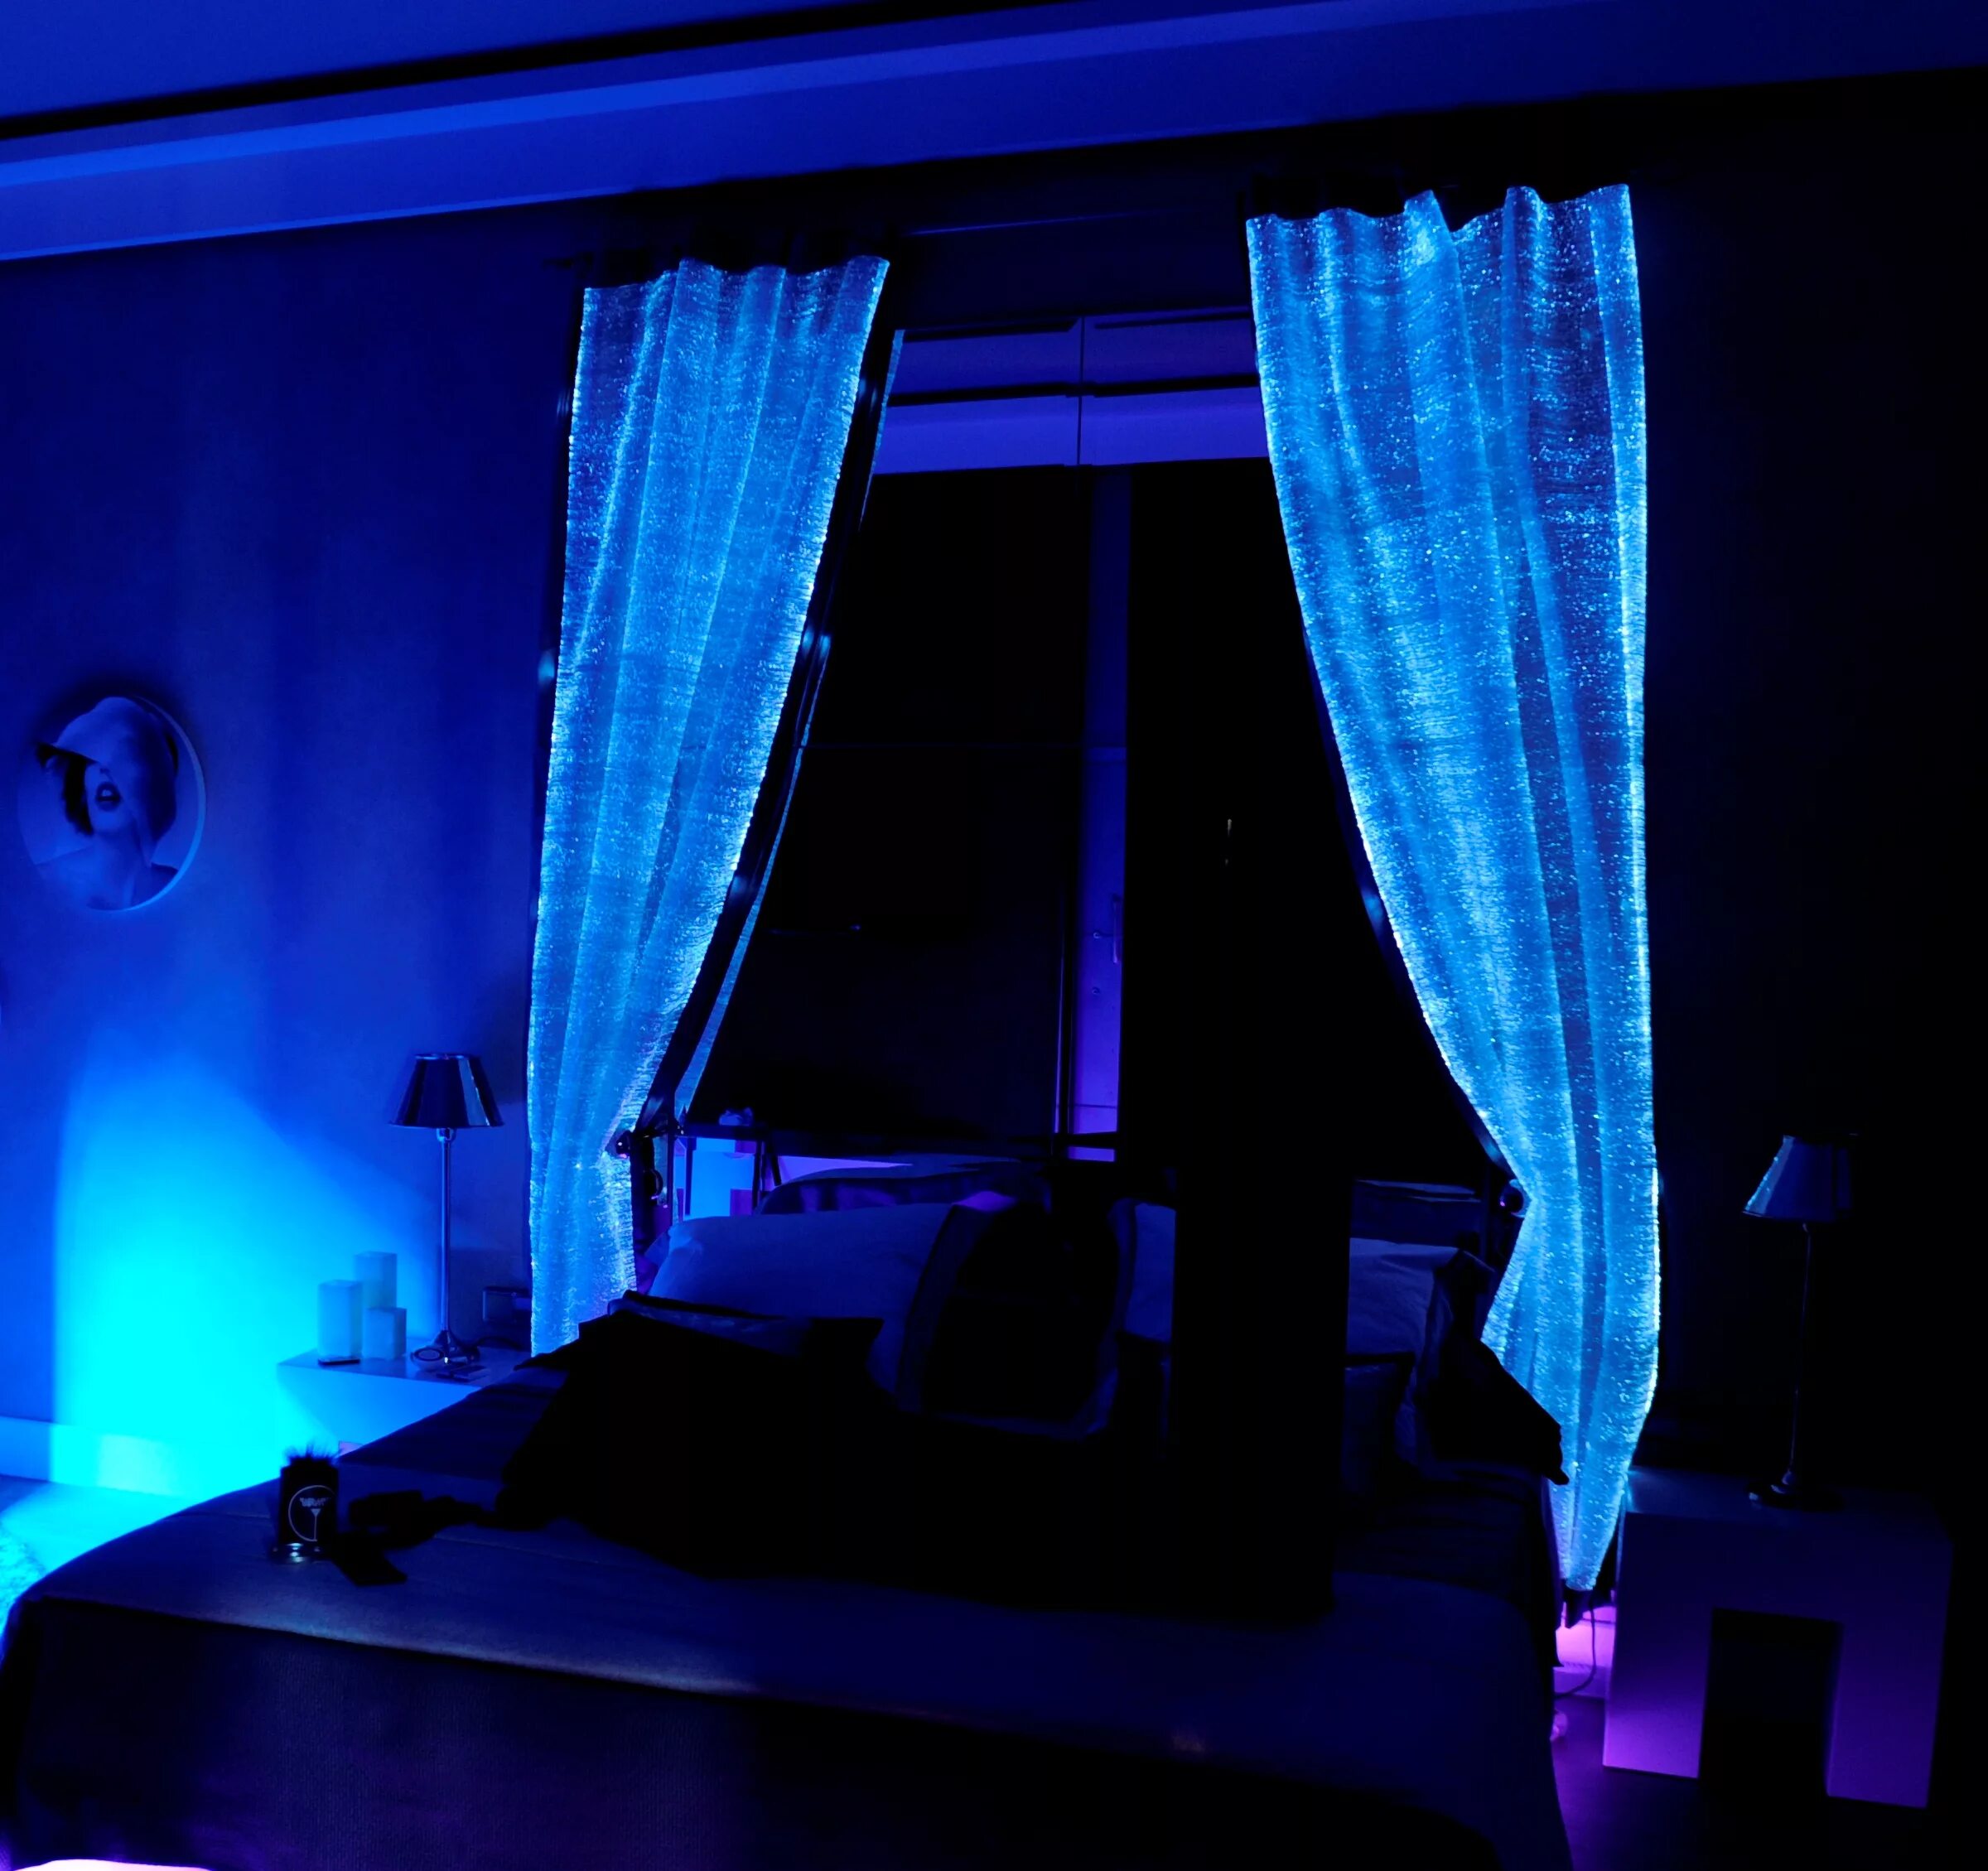 Ткань светится. Шторы светящиеся в темноте. Шторы которые светятся в темноте. Светящаяся комната. Комната с голубой подсветкой.